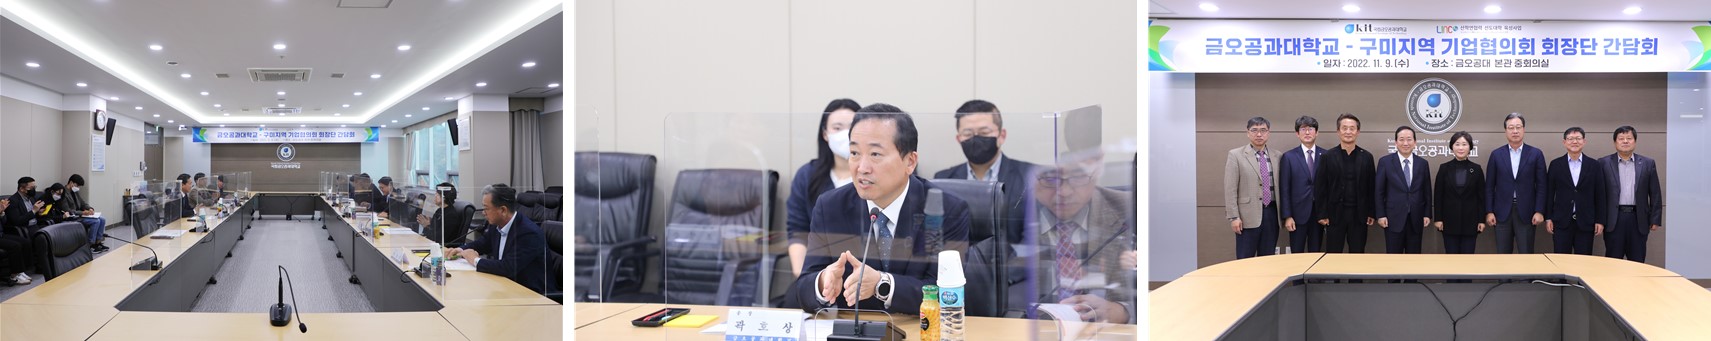 ‘구미지역 기업협의회 회장단’ 간담회 개최